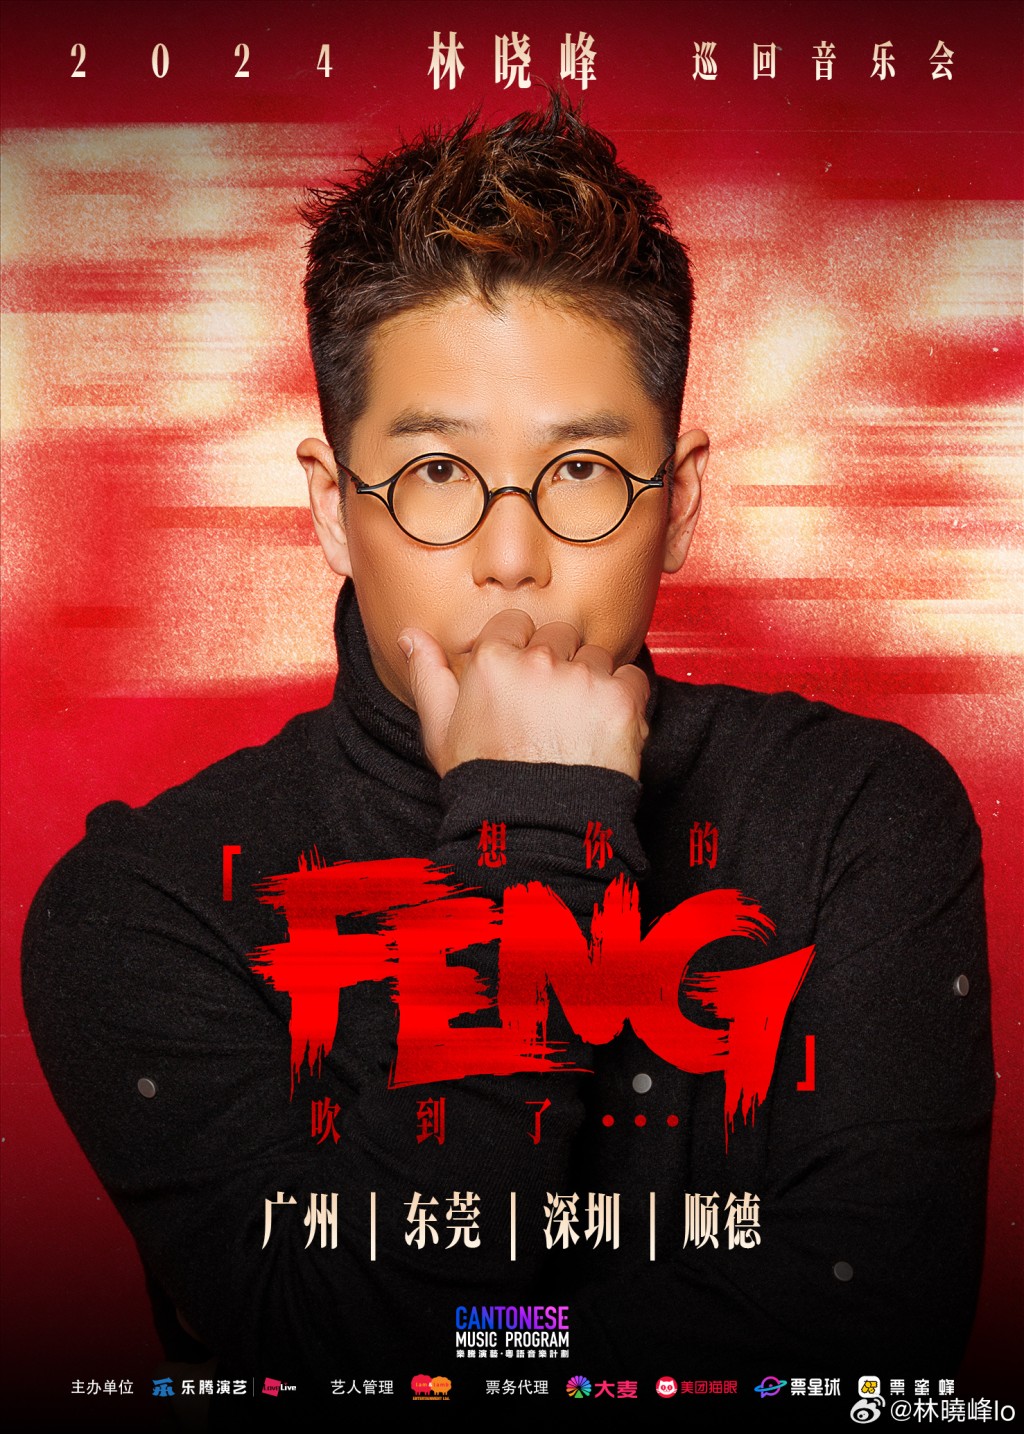 林曉峰日前在微博宣布將會舉行首個巡迴音樂會《想你的「FENG」》。